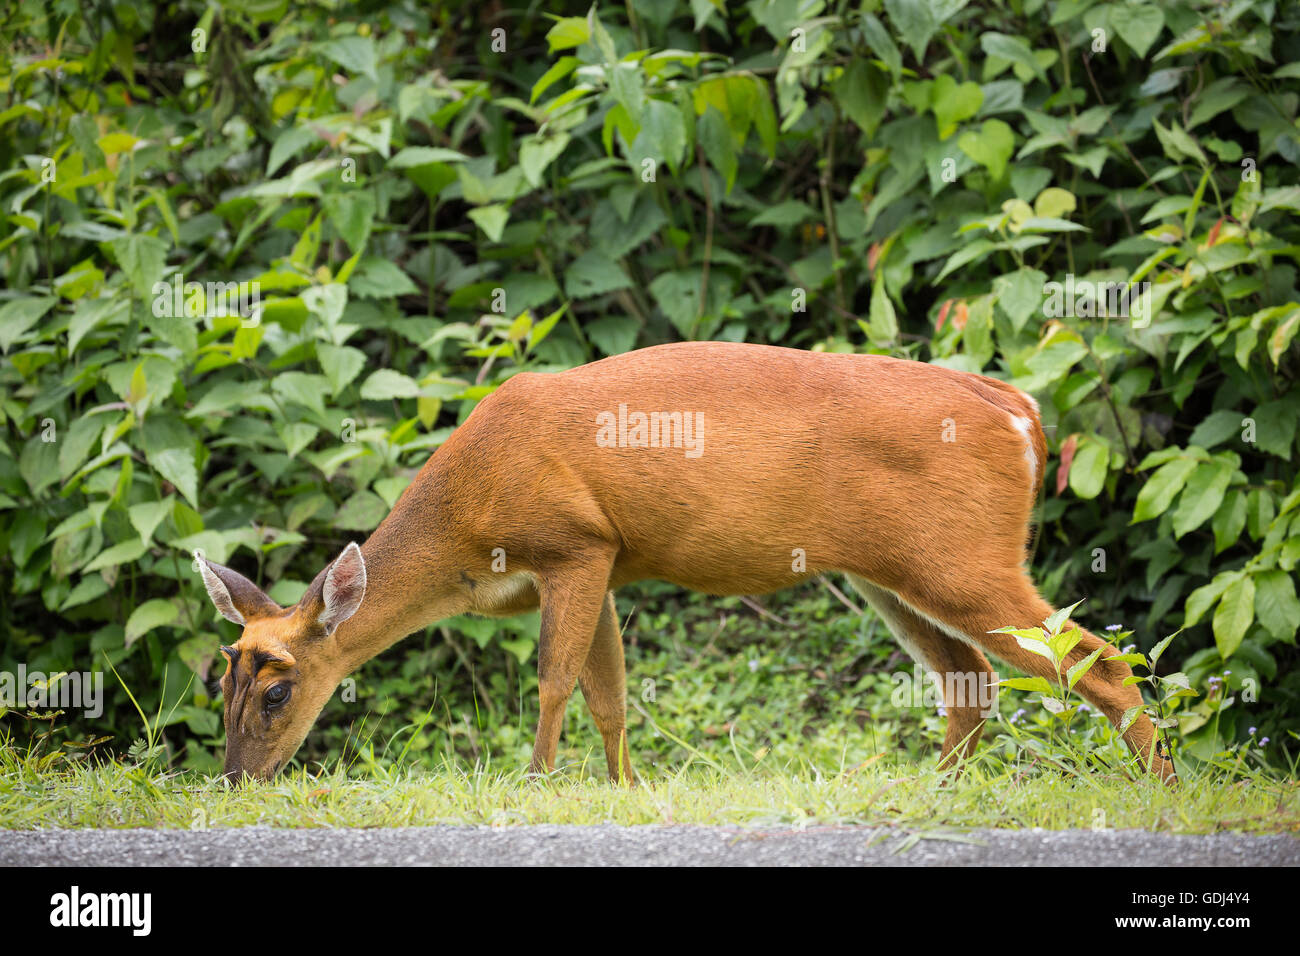 Ciervos salvajes encontrar algunos alimentos en suelo de hierba. Anduvo delante de árbol verde en el bosque tropical de Tailandia. Foto de stock